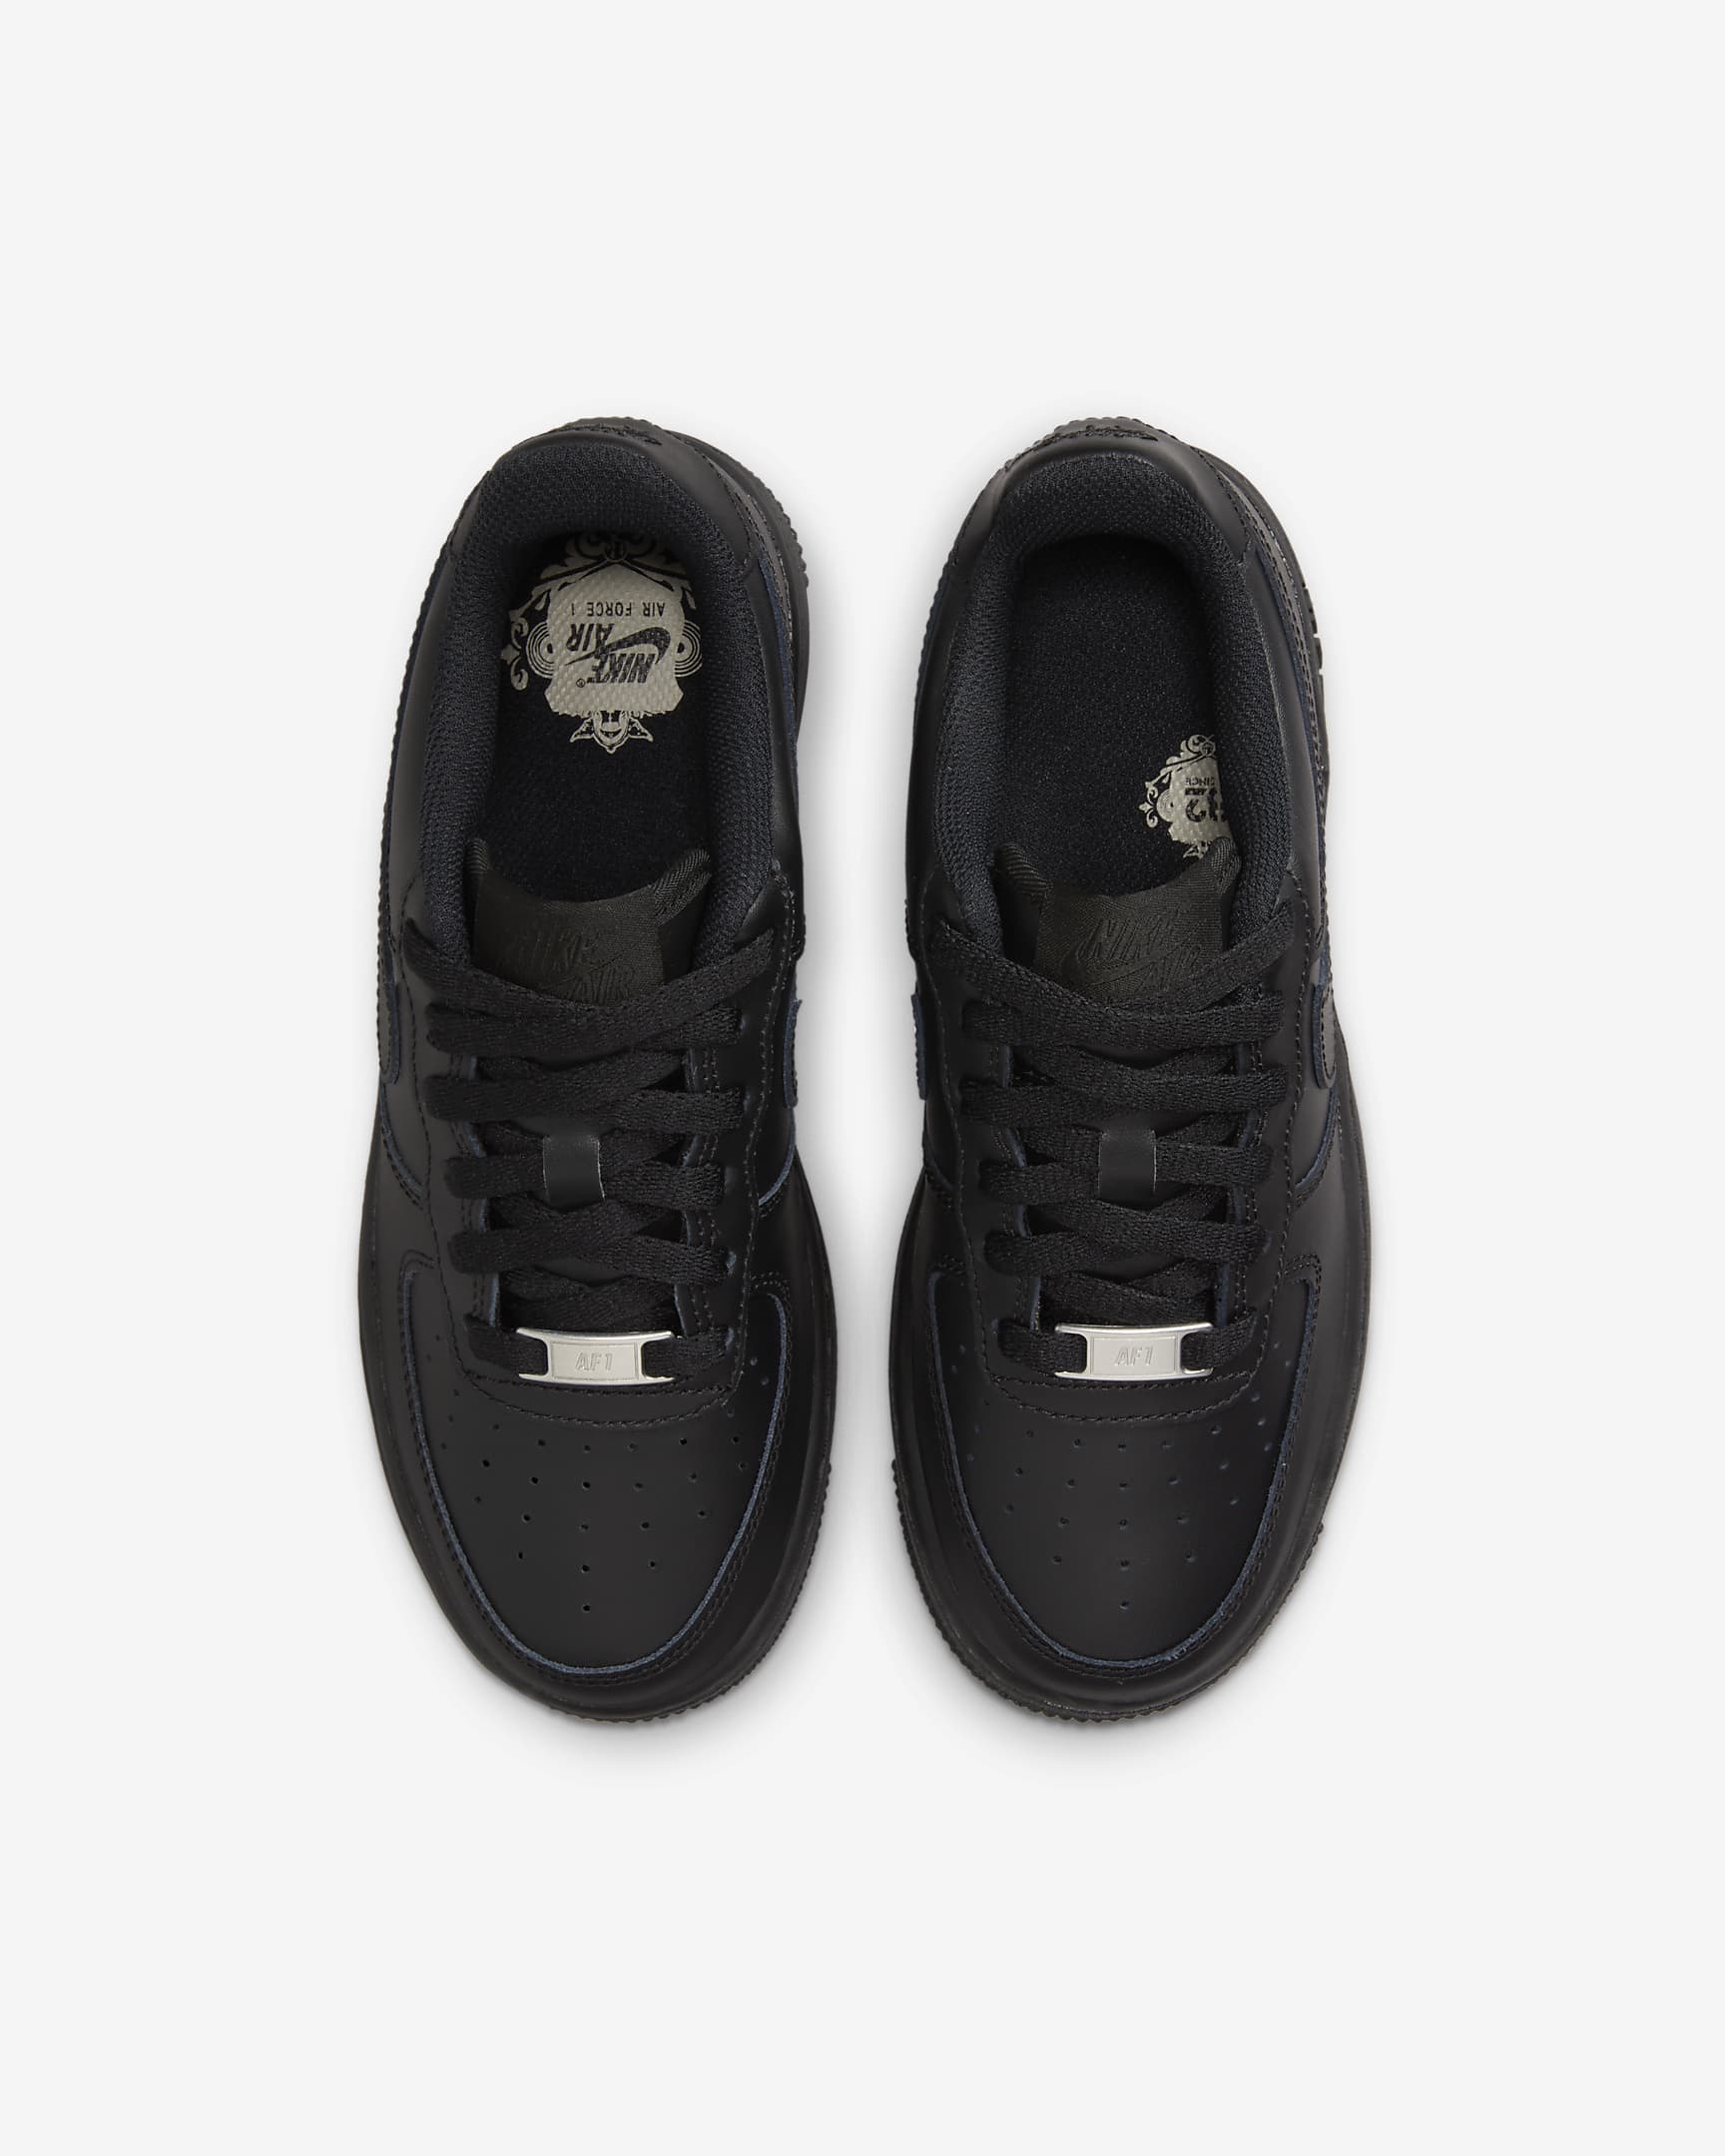 Nike Air Force 1 LE-sko til større børn - sort/sort/sort/sort